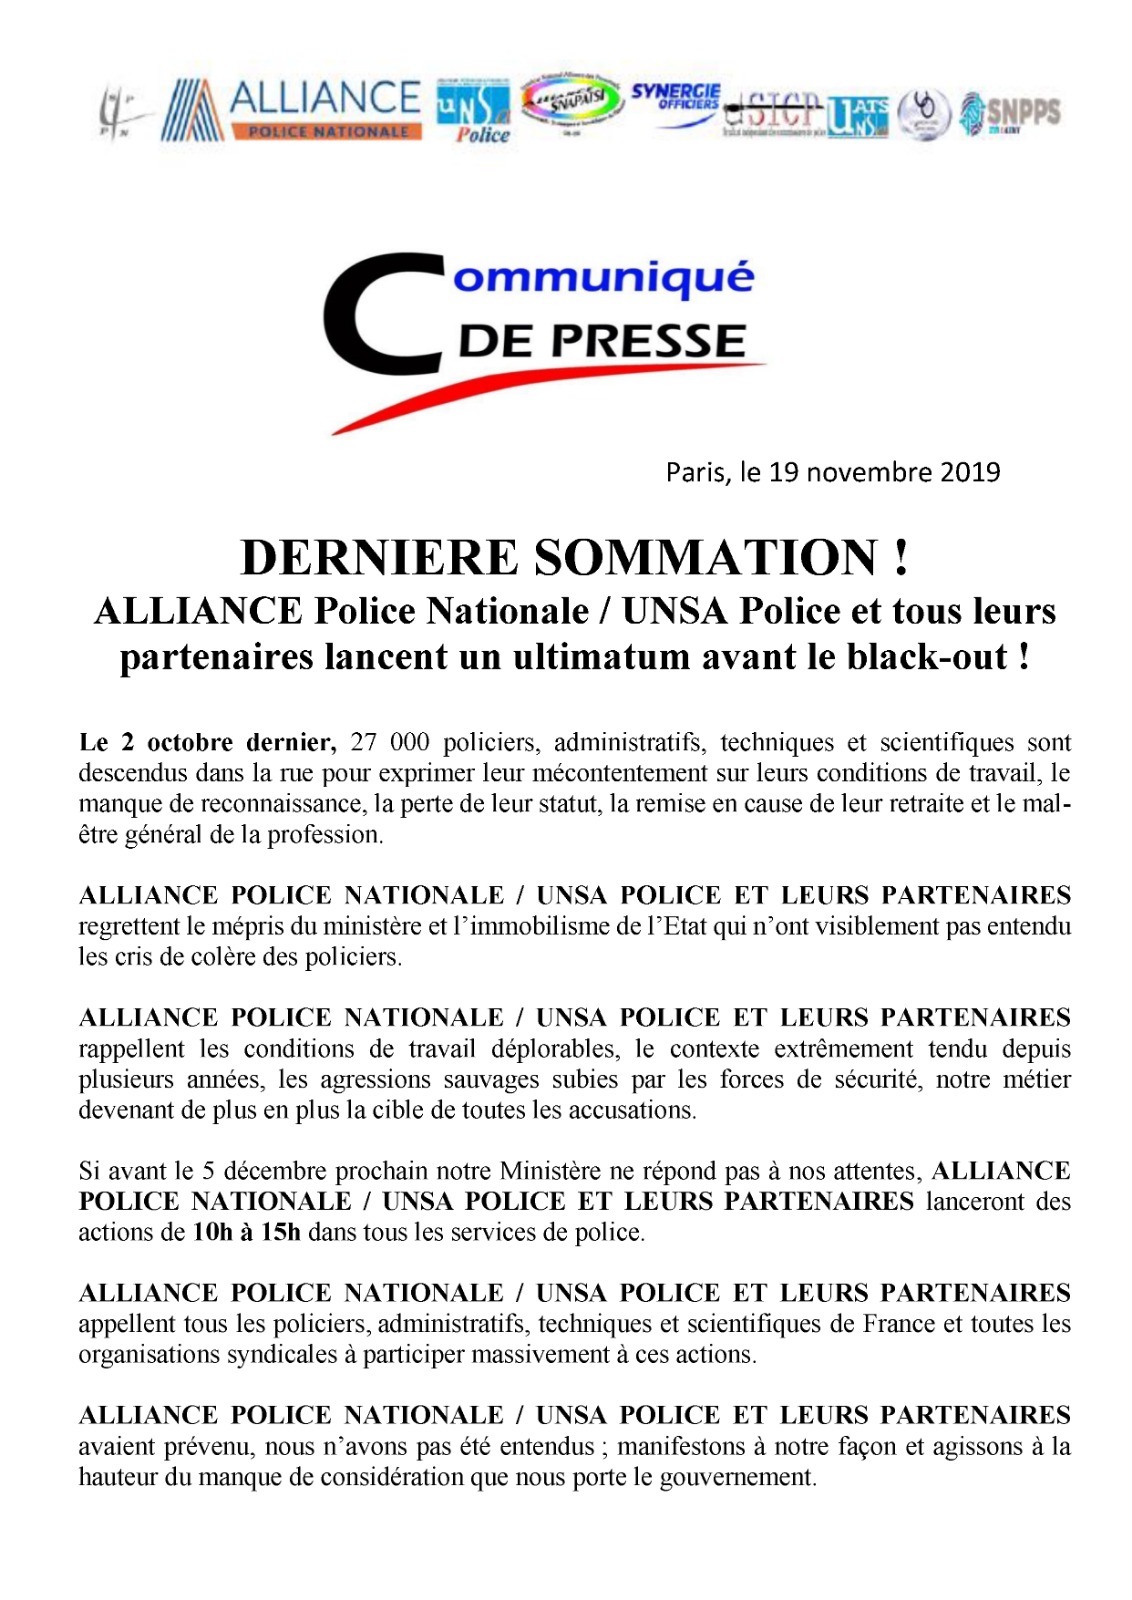 Grève du 5 décembre: Alliance Police Nationale lance un ultimatum